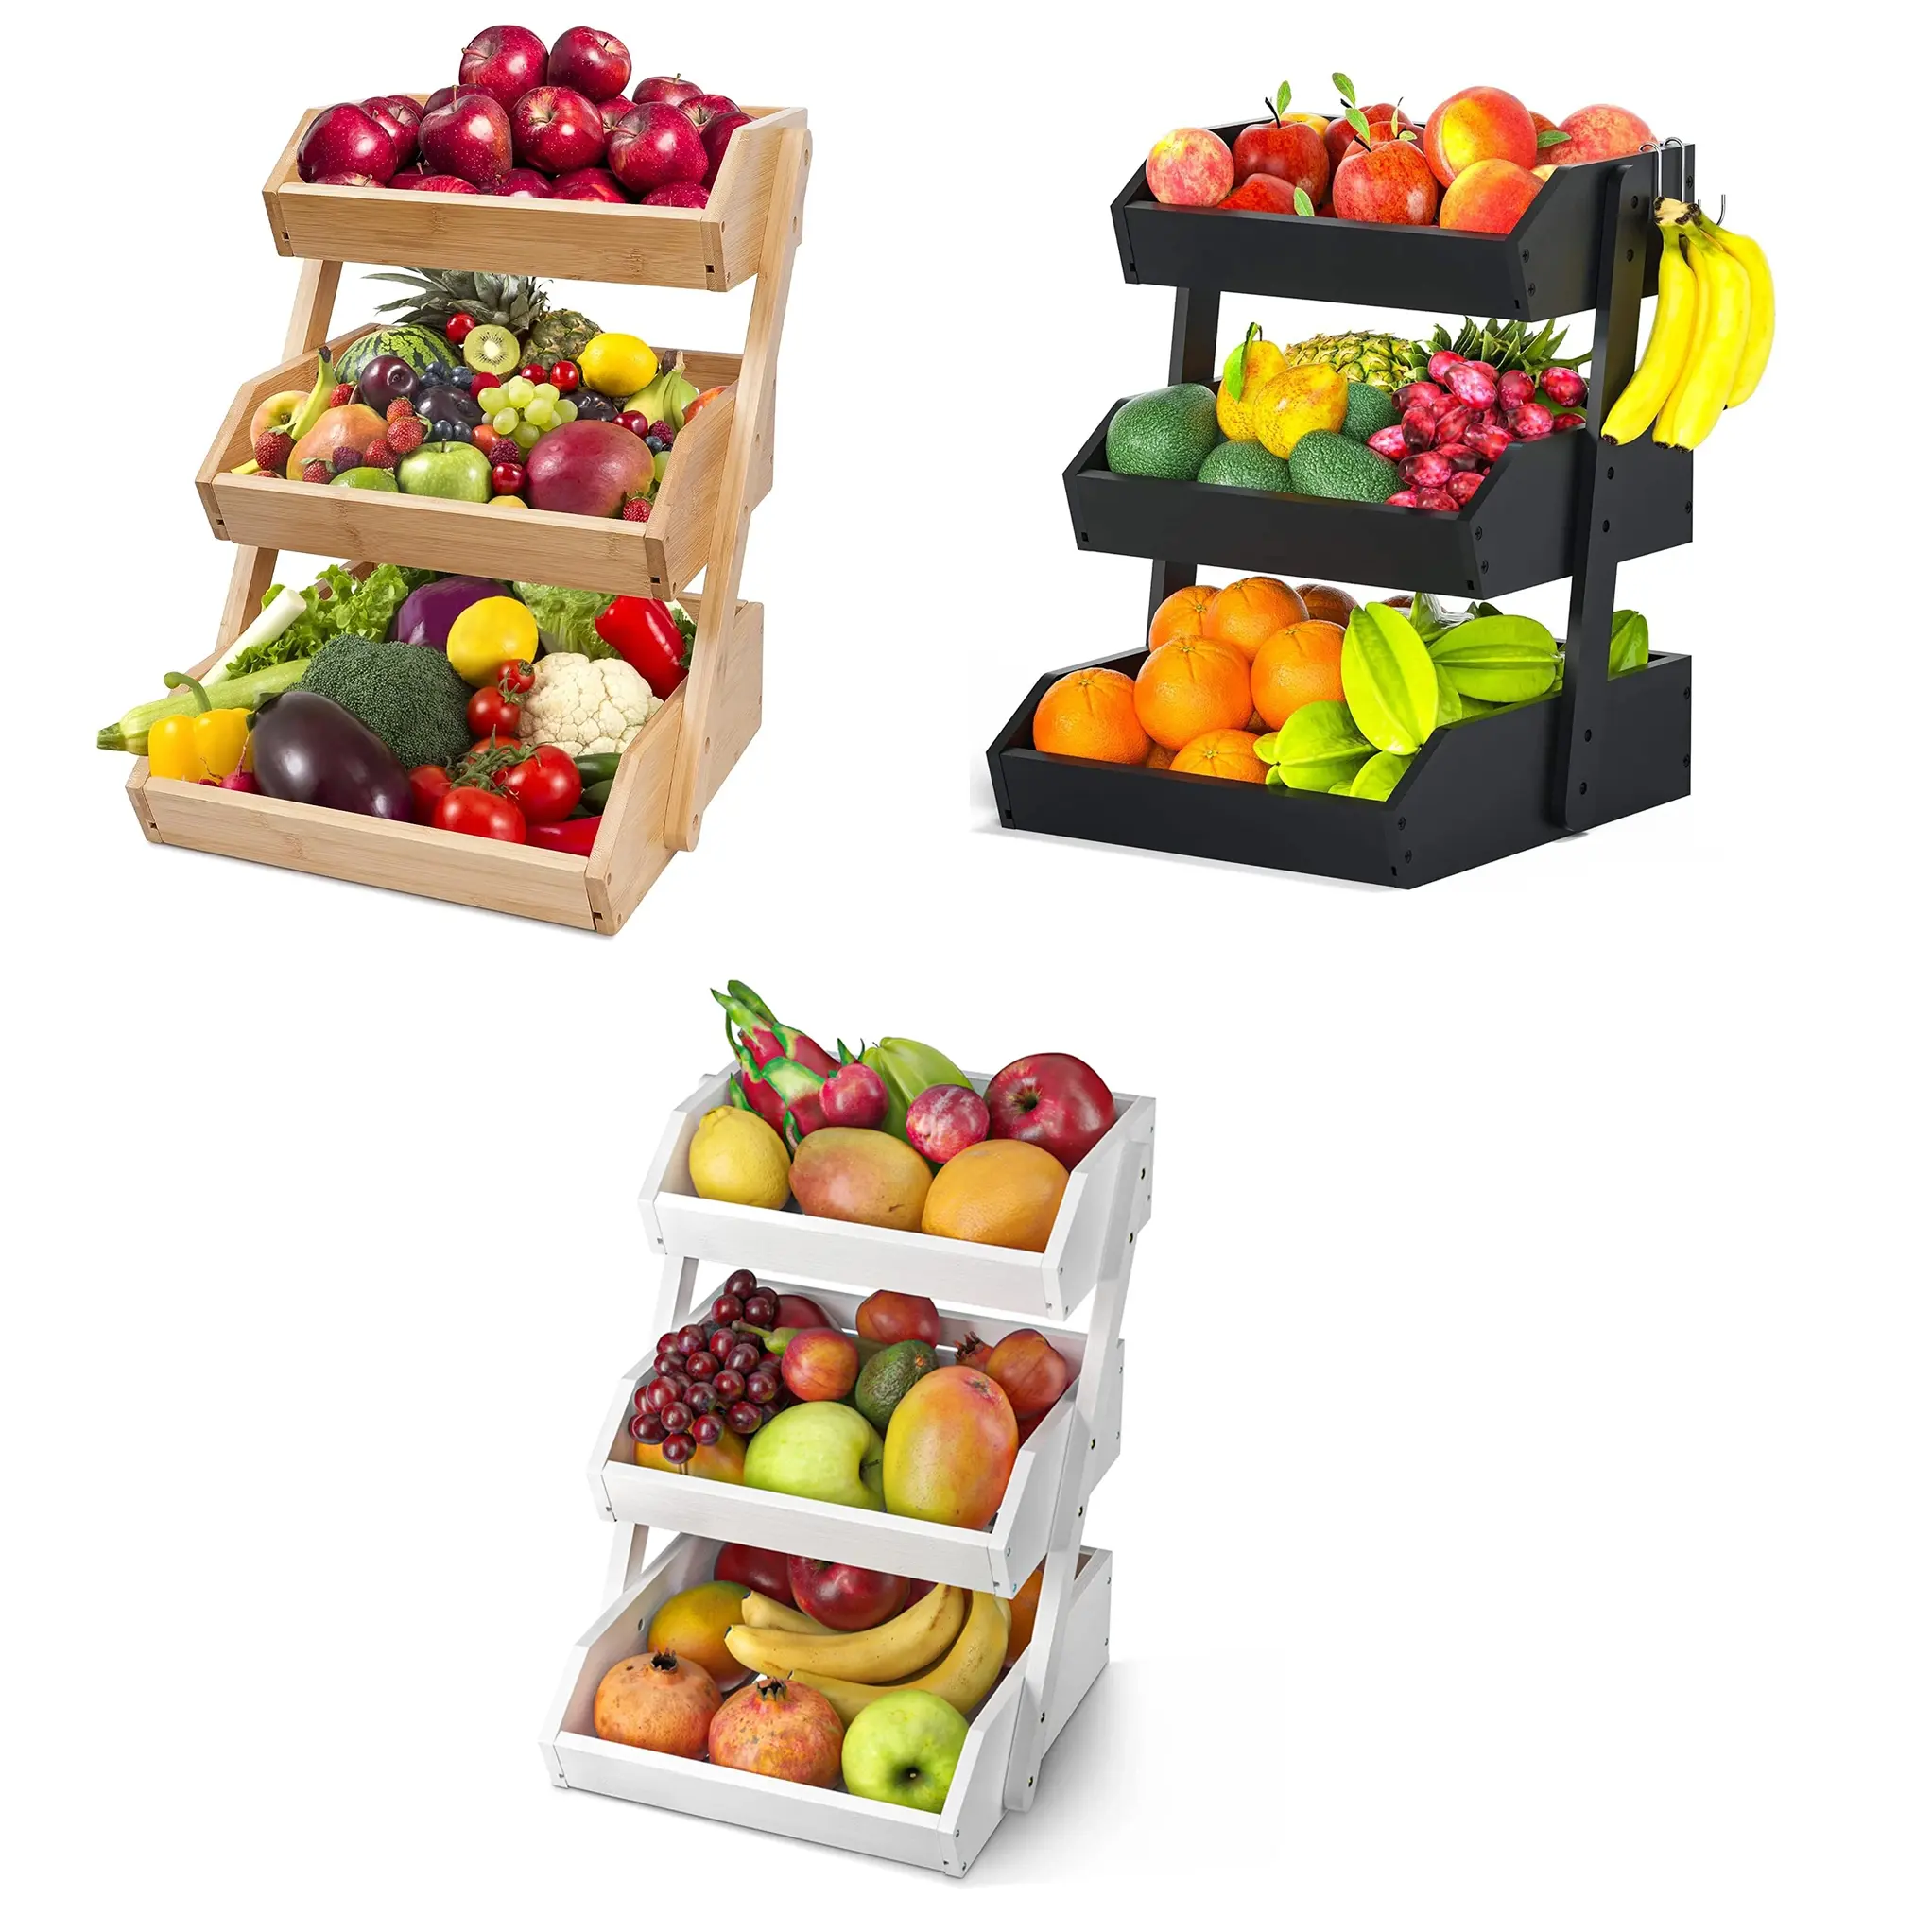 Encimera portátil personalizada, soporte para frutas y verduras, cesta de frutas de 3 niveles, cesta de almacenamiento, bandejas de almacenamiento de bambú, cestas para frutas